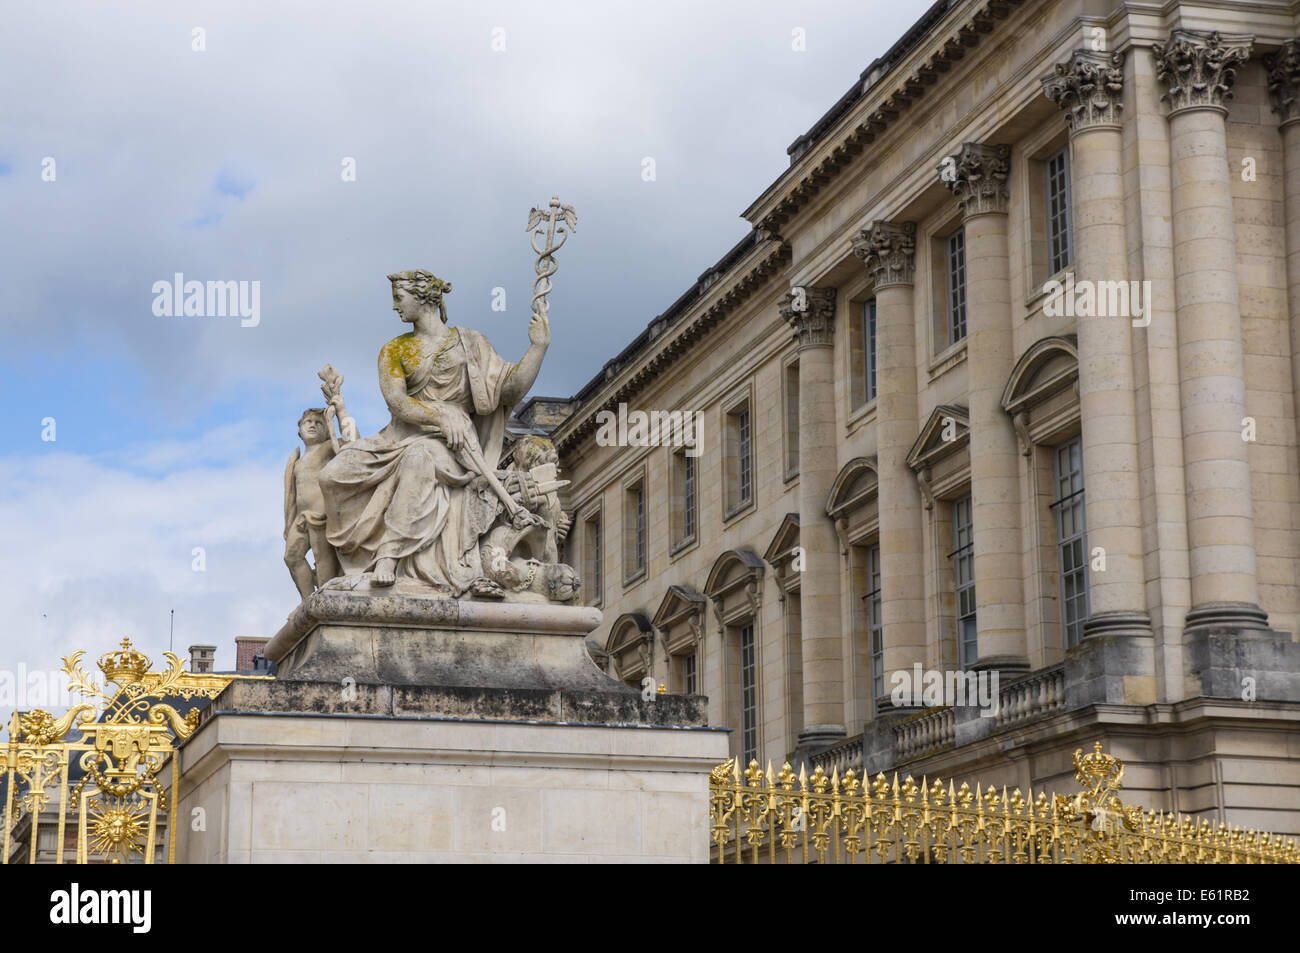 Statue à côté de la porte d'or du château de Versailles Château de Versailles [ ] en France Banque D'Images